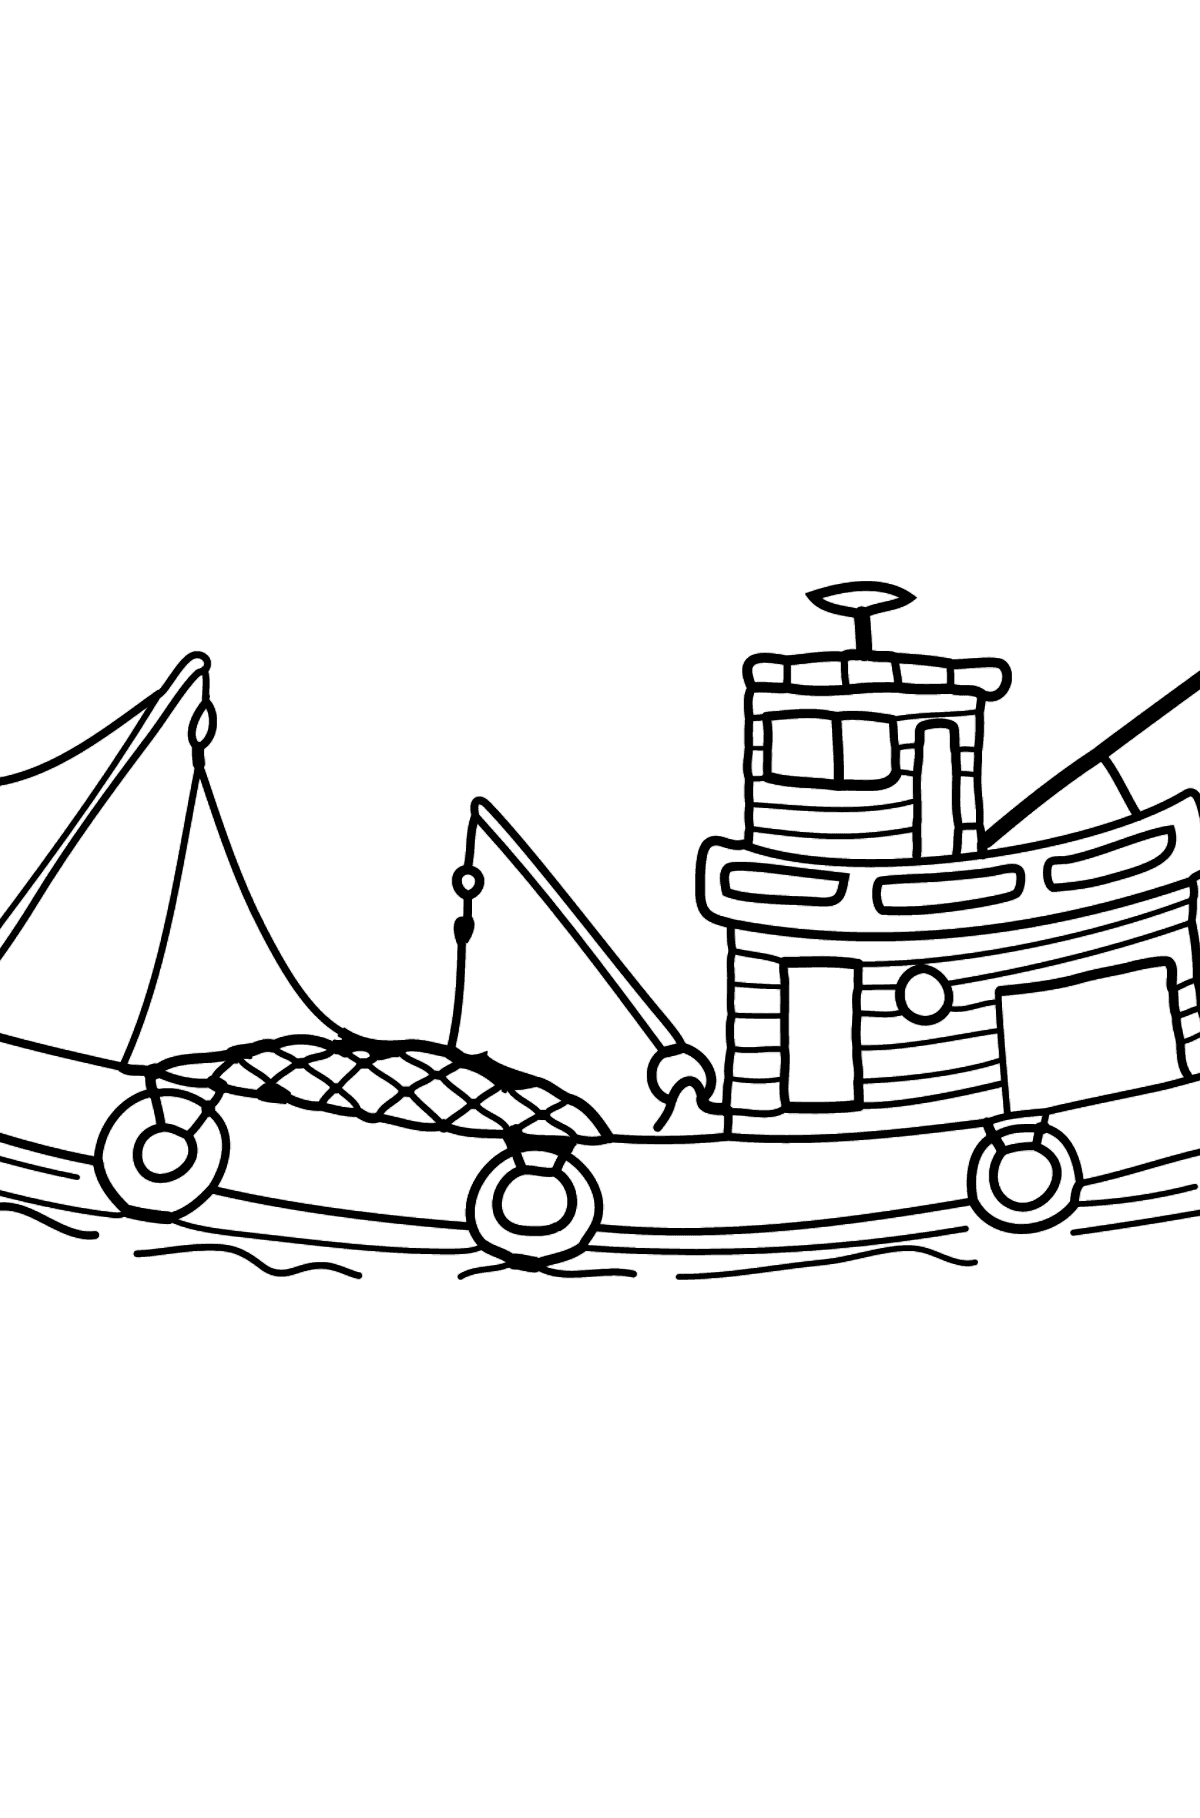 Dibujo para Colorear - Un Barco de Pesca - Dibujos para Colorear para Niños